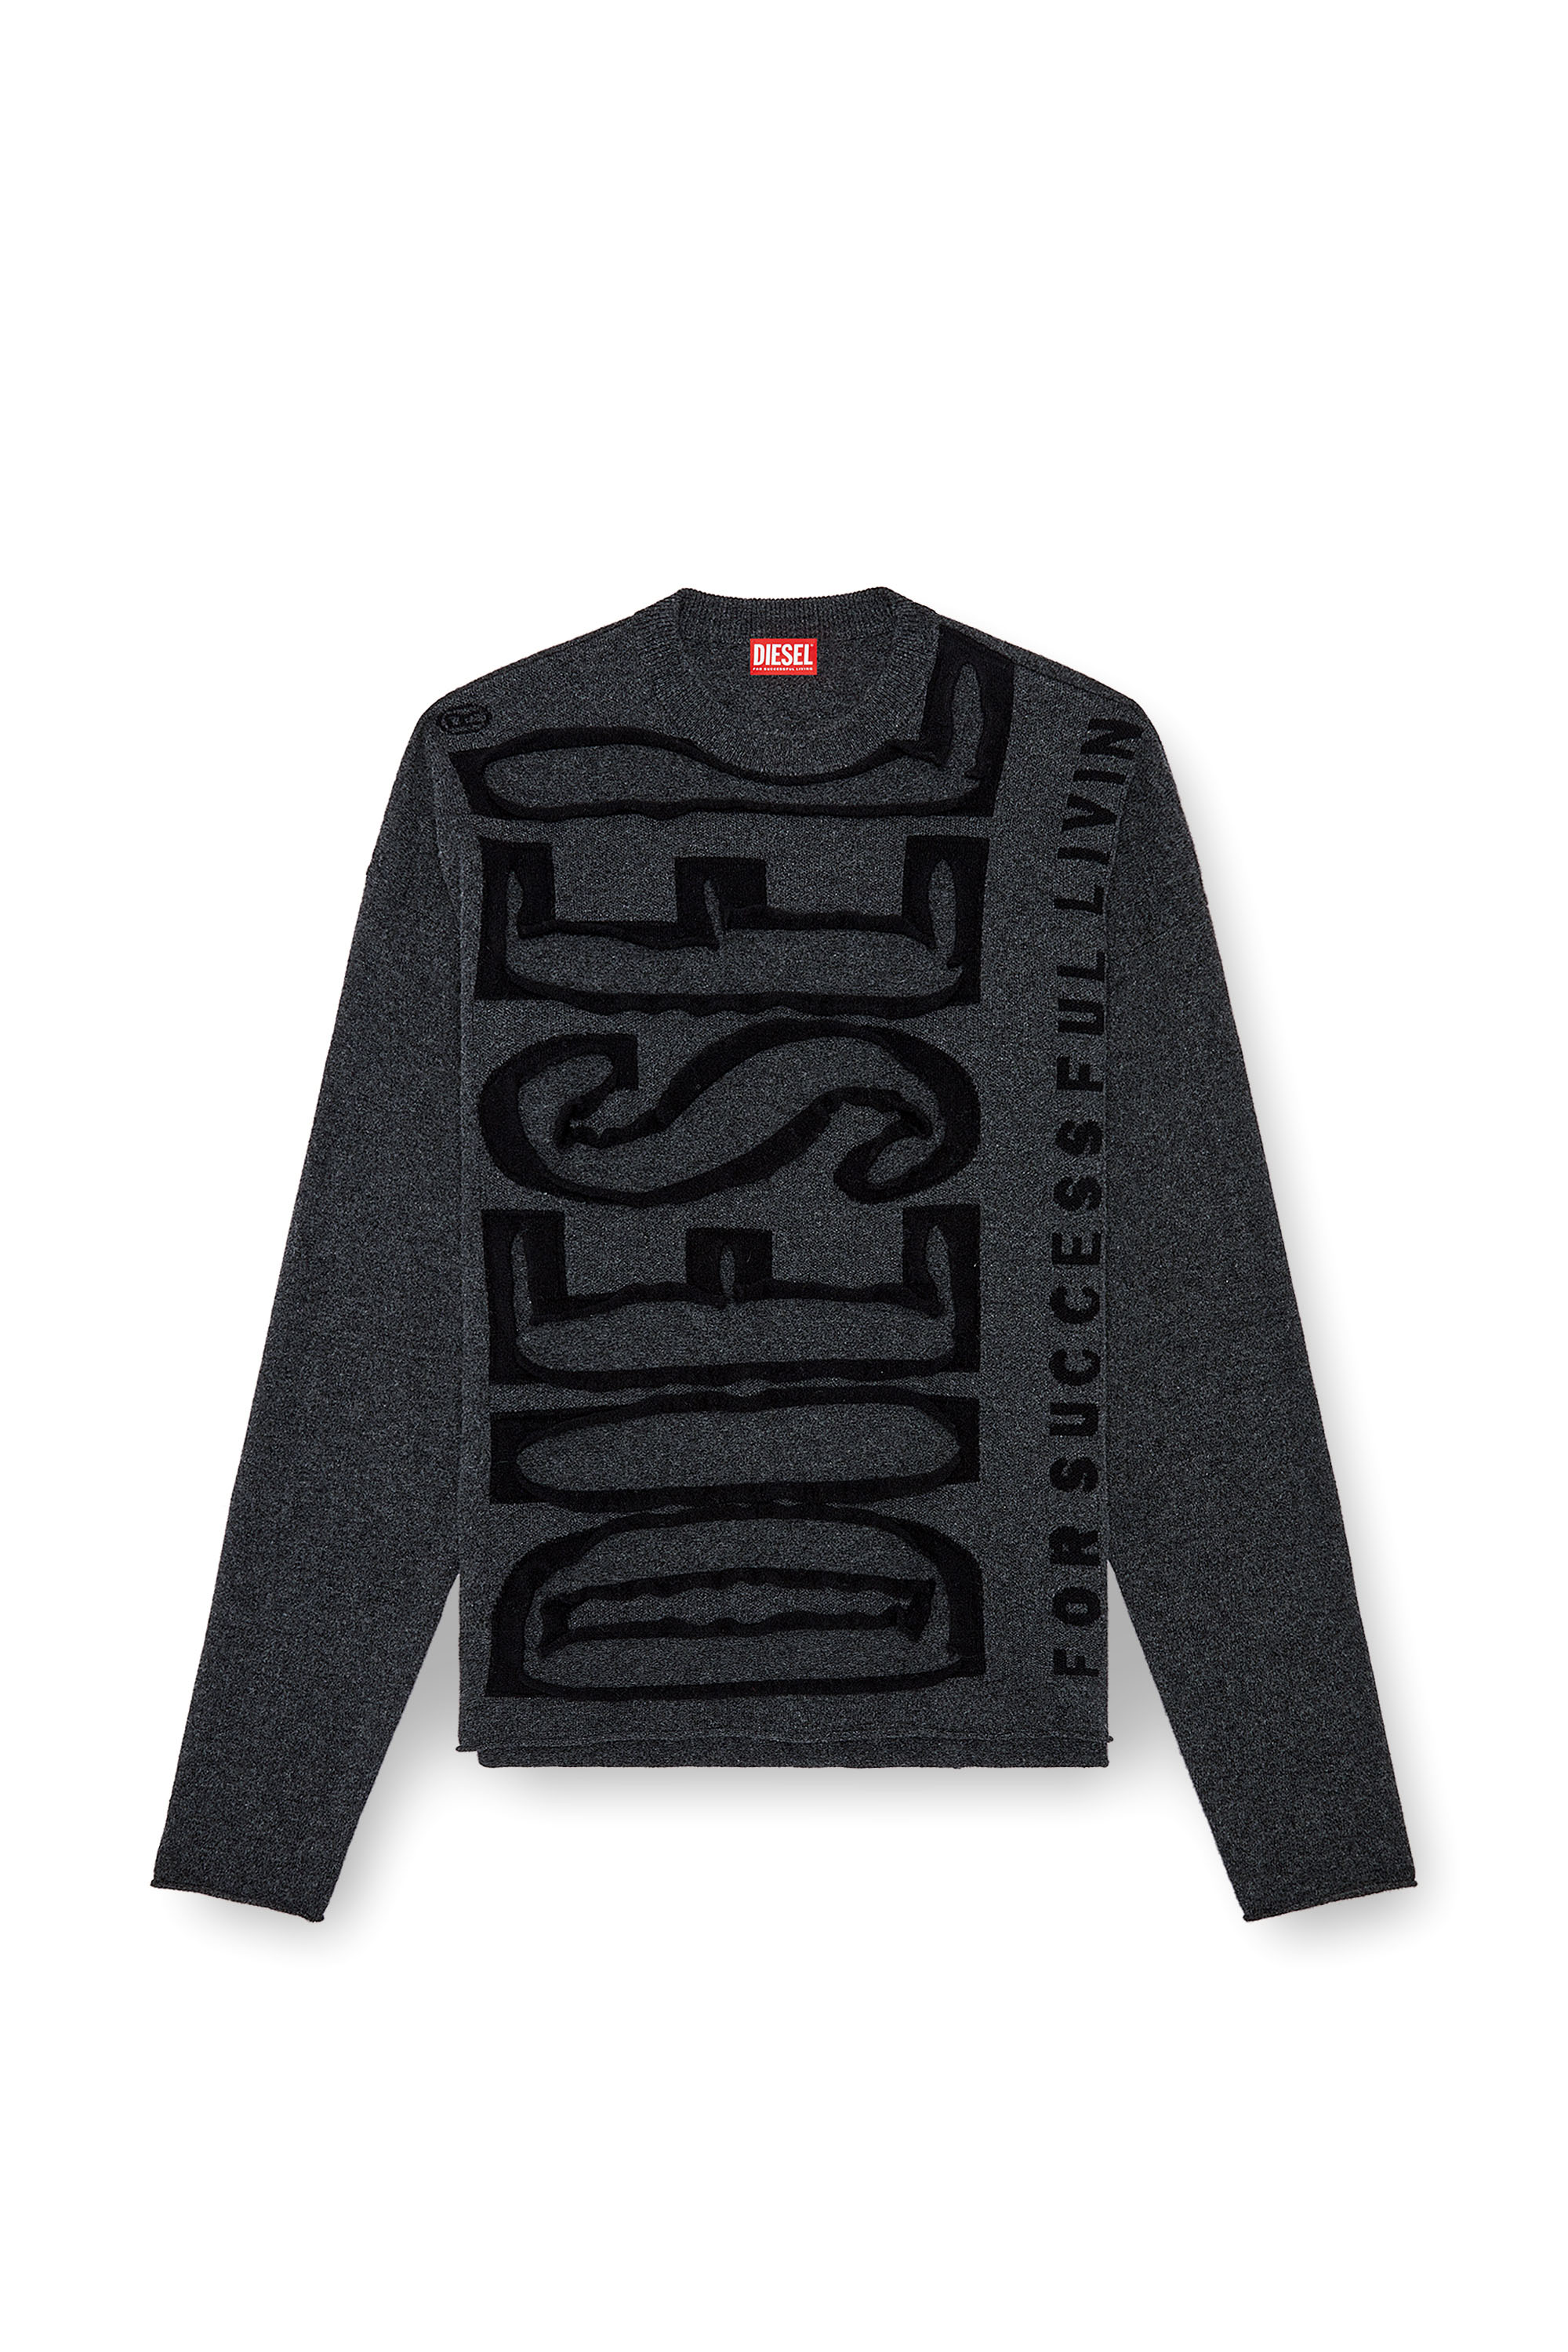 Diesel - K-FLOYD, Hombre Jersey de lana con Super Logo despegado in Gris - Image 3